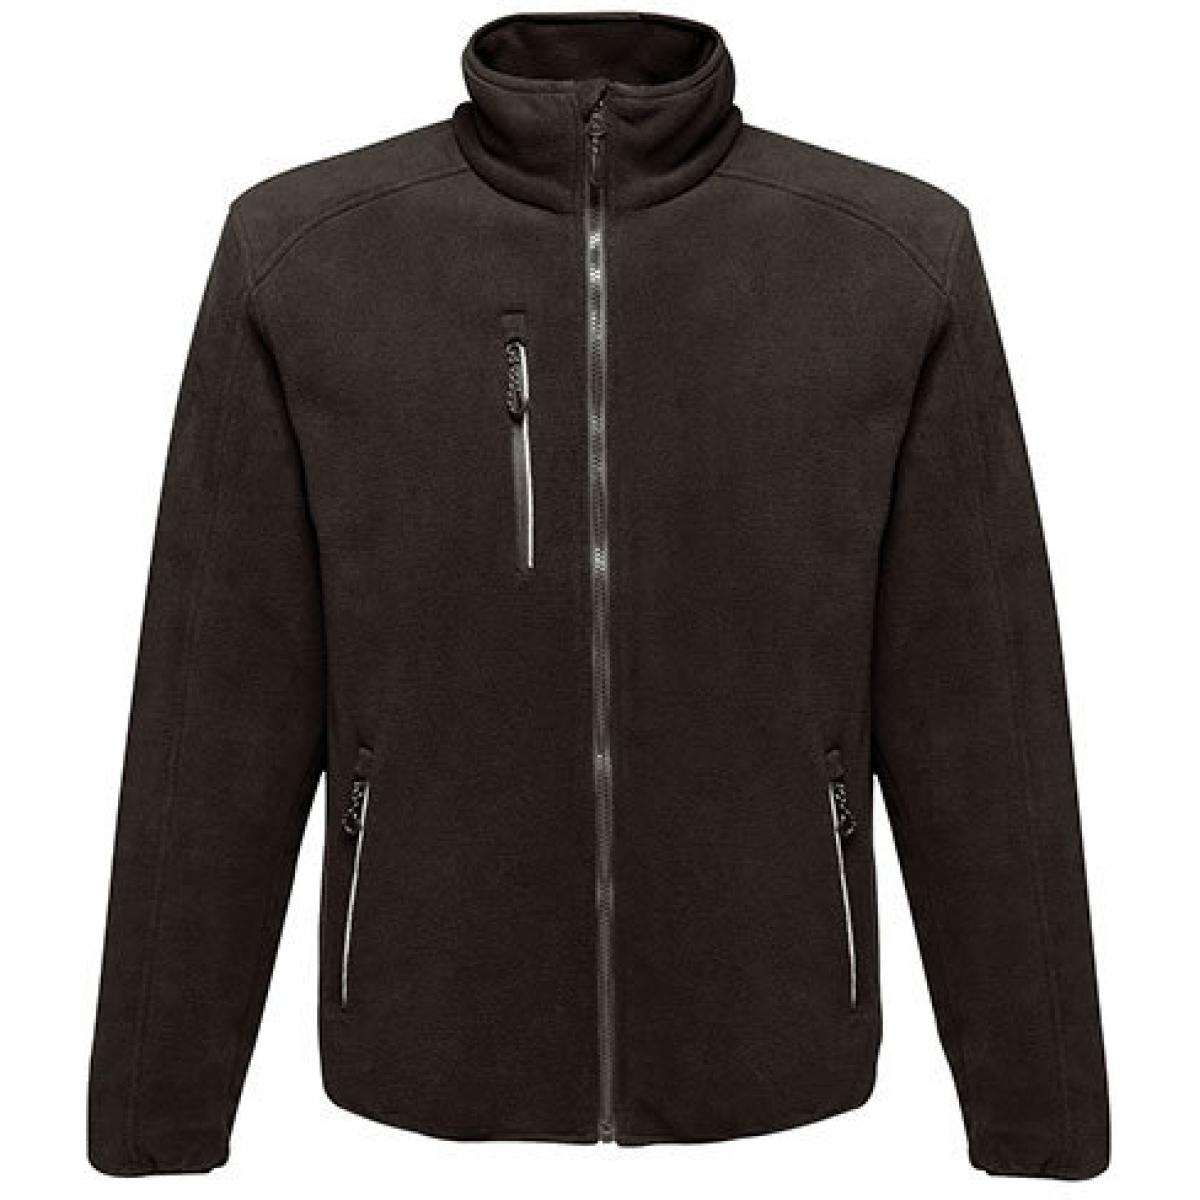 Hersteller: Regatta Herstellernummer: TRA624 Artikelbezeichnung: Herren Omicron III Waterproof Breathable Fleece Jacket Farbe: Black